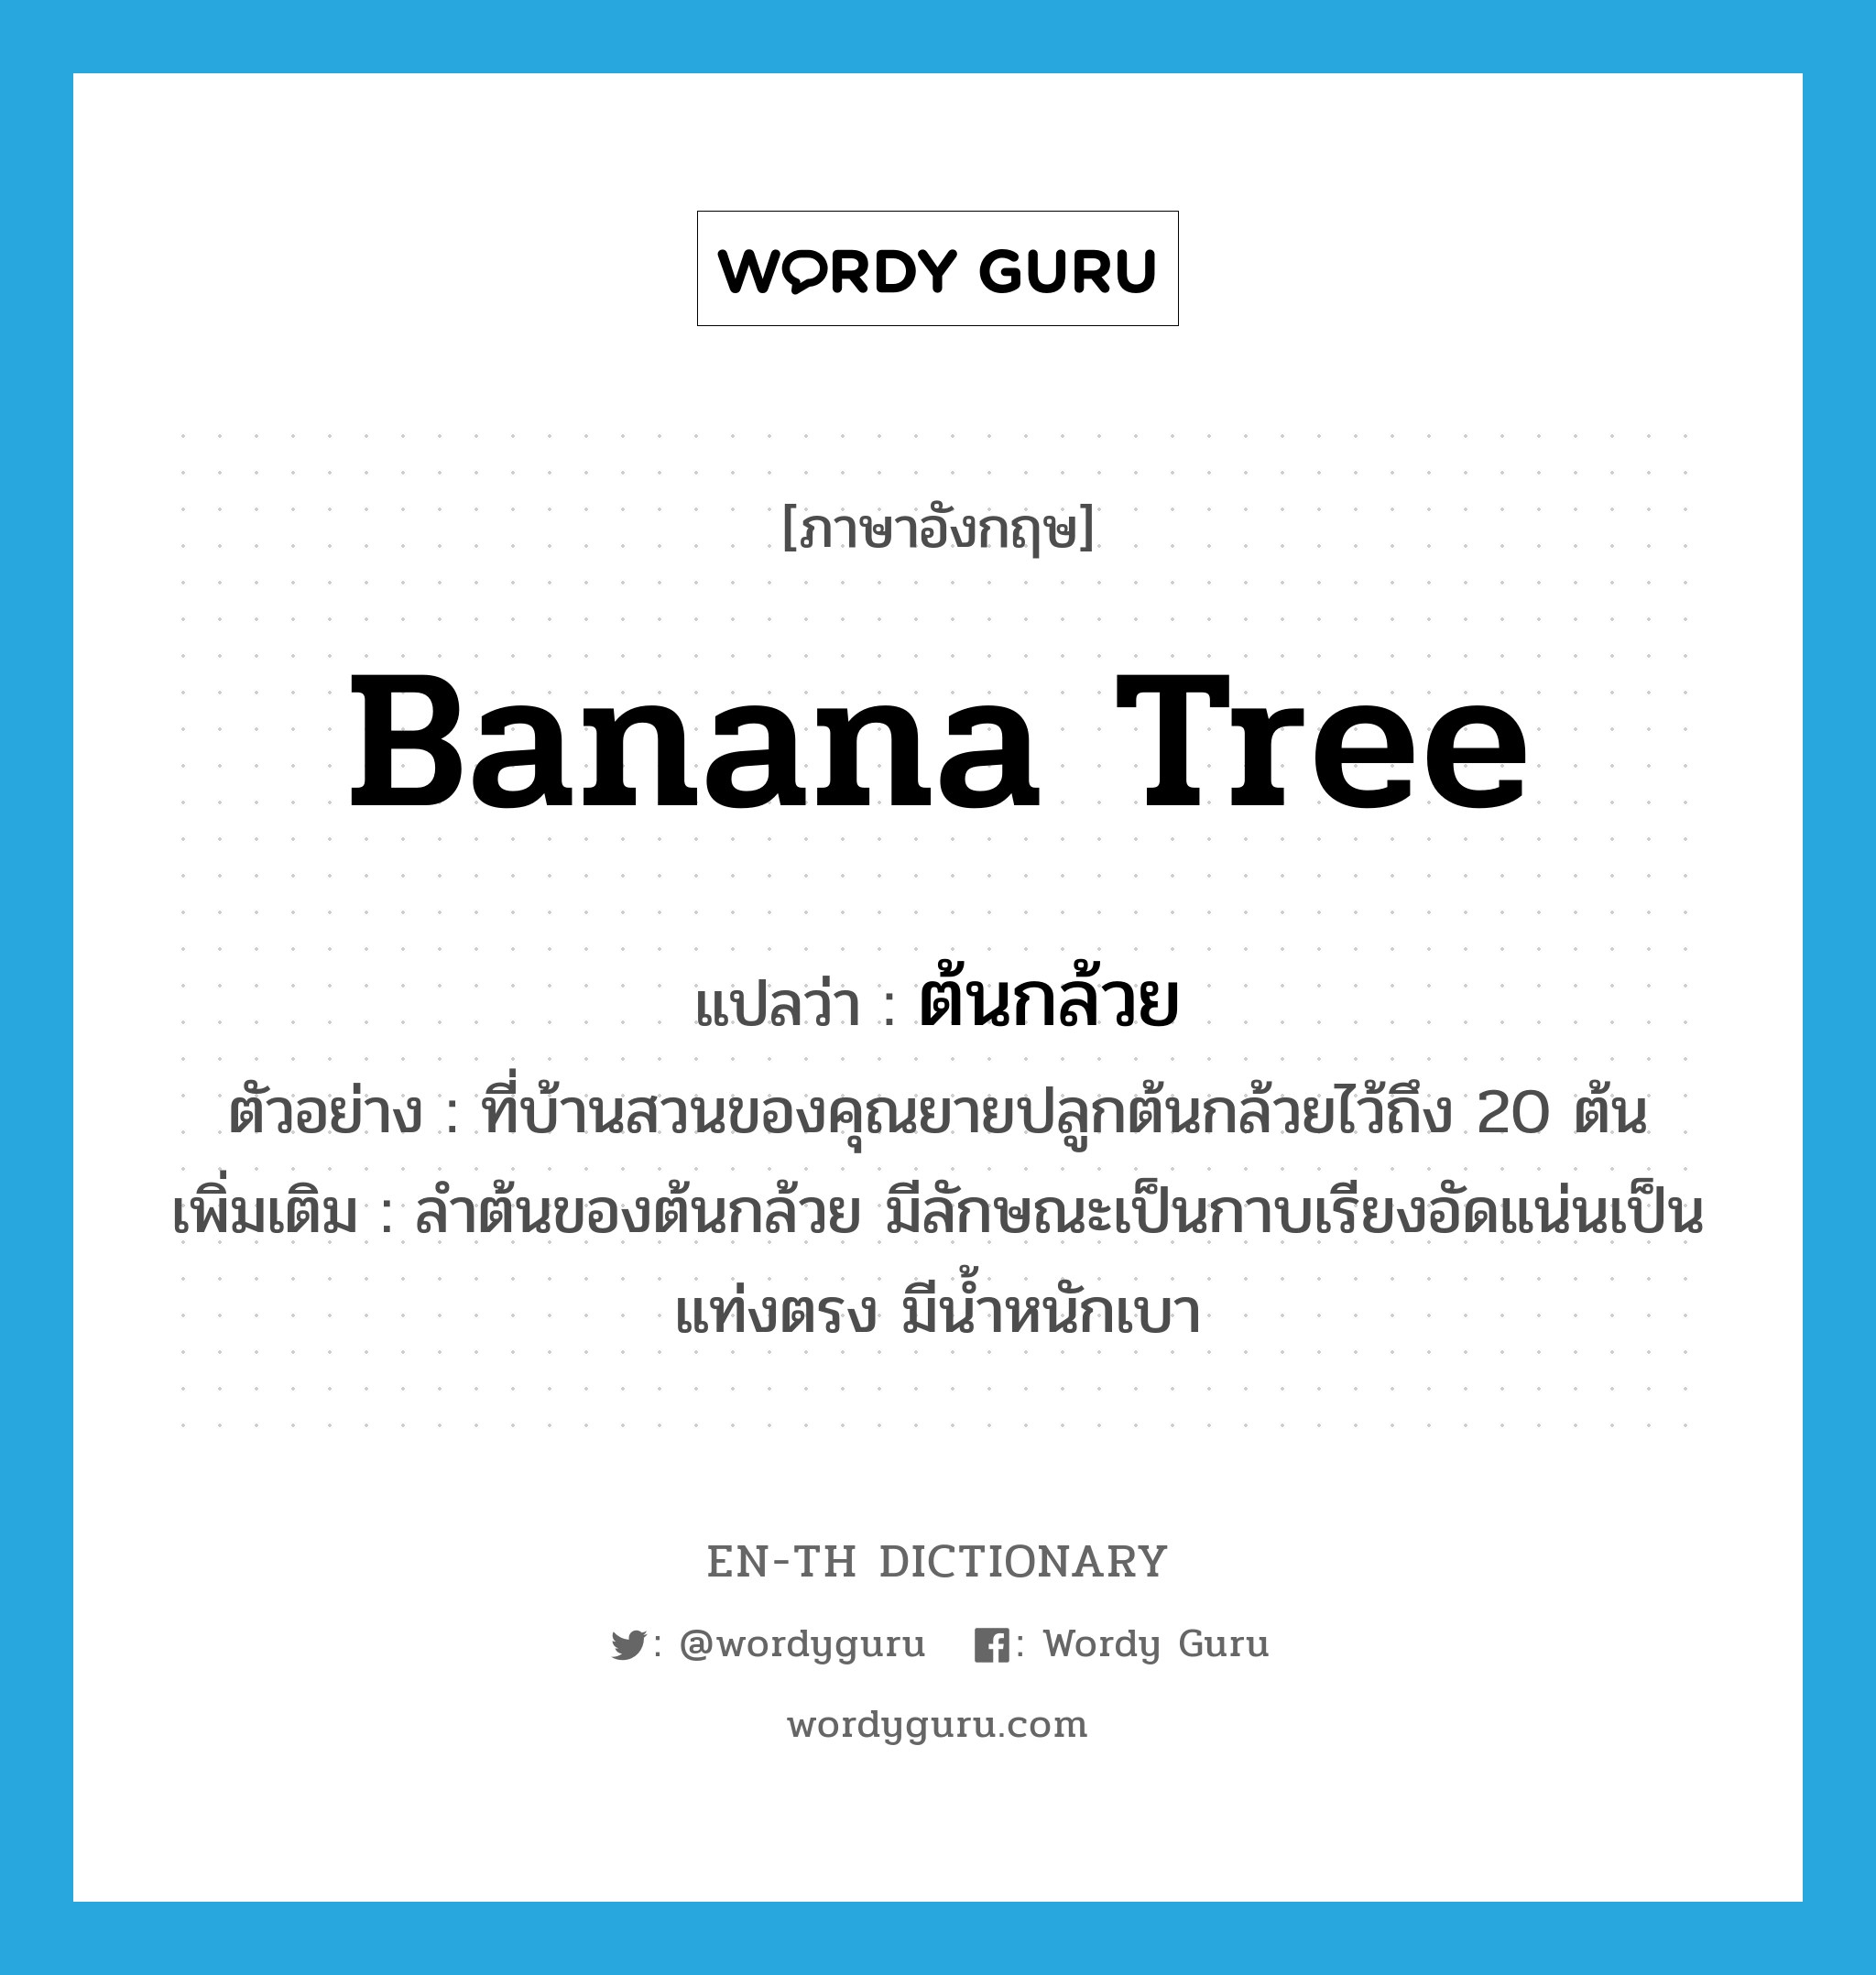 banana tree แปลว่า?, คำศัพท์ภาษาอังกฤษ banana tree แปลว่า ต้นกล้วย ประเภท N ตัวอย่าง ที่บ้านสวนของคุณยายปลูกต้นกล้วยไว้ถึง 20 ต้น เพิ่มเติม ลำต้นของต้นกล้วย มีลักษณะเป็นกาบเรียงอัดแน่นเป็นแท่งตรง มีน้ำหนักเบา หมวด N